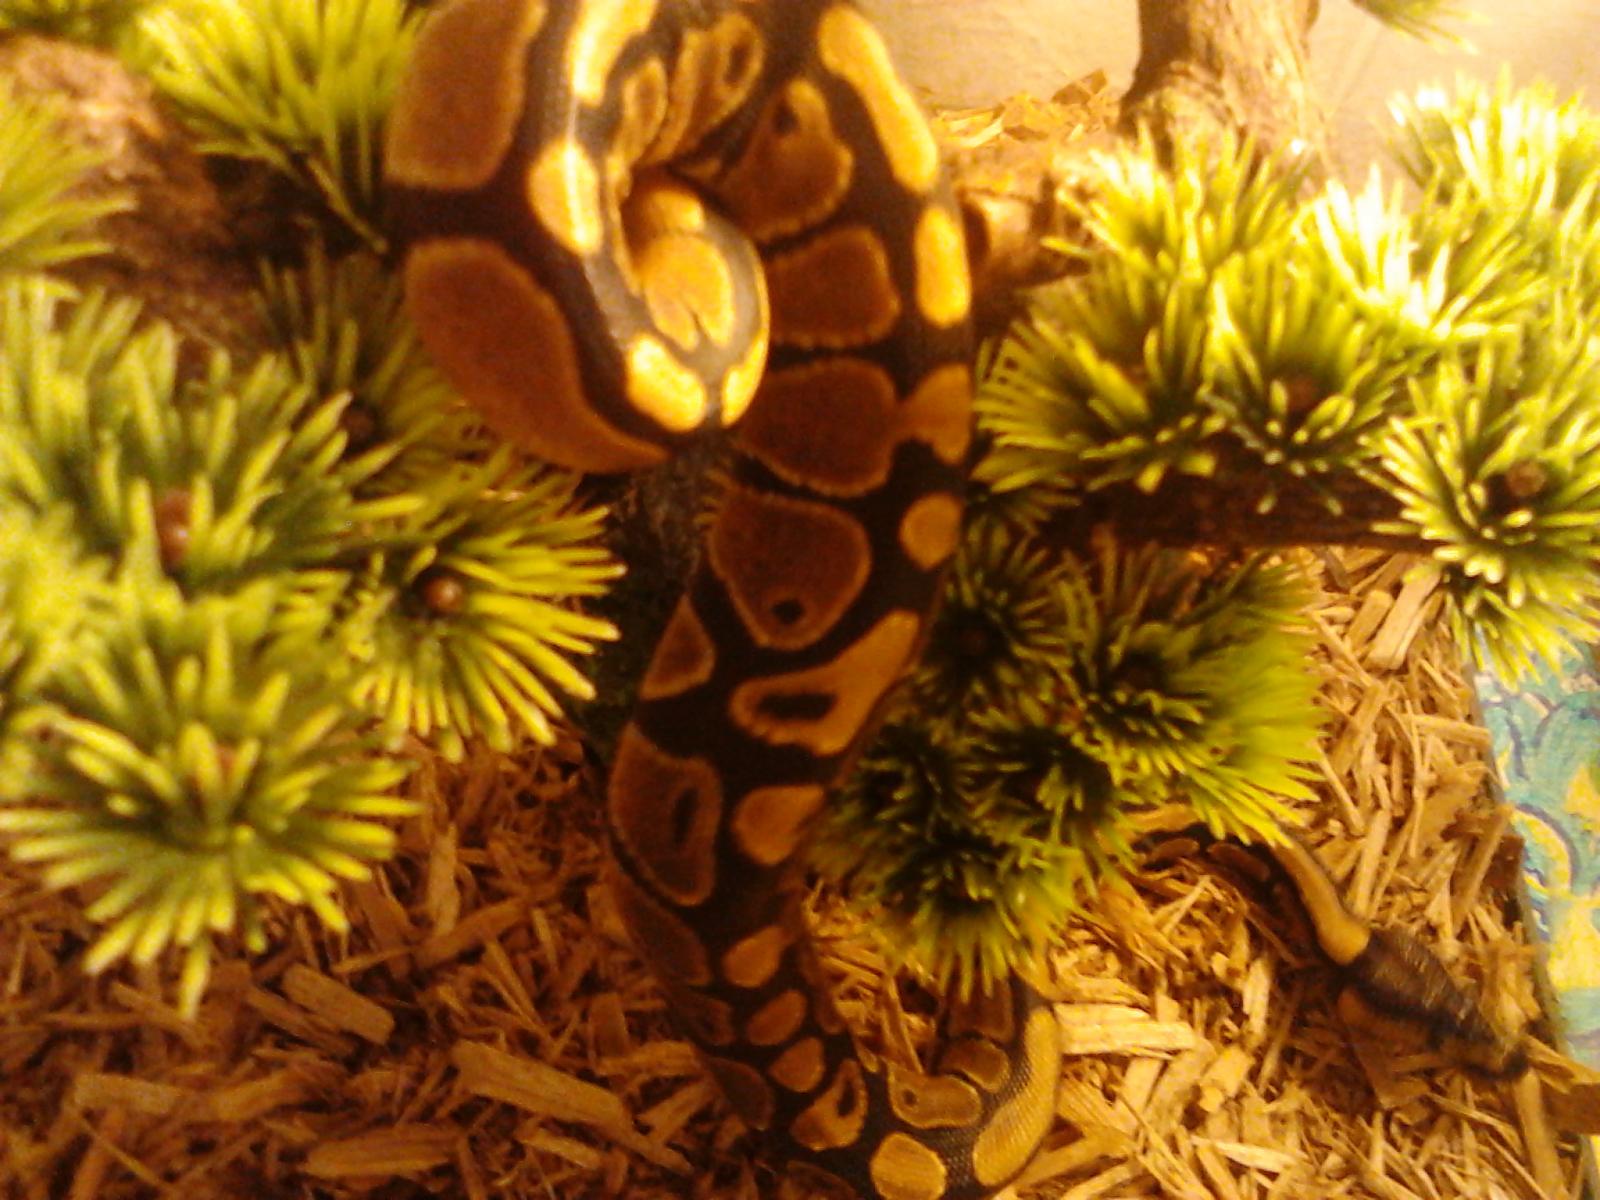 my first ball python!